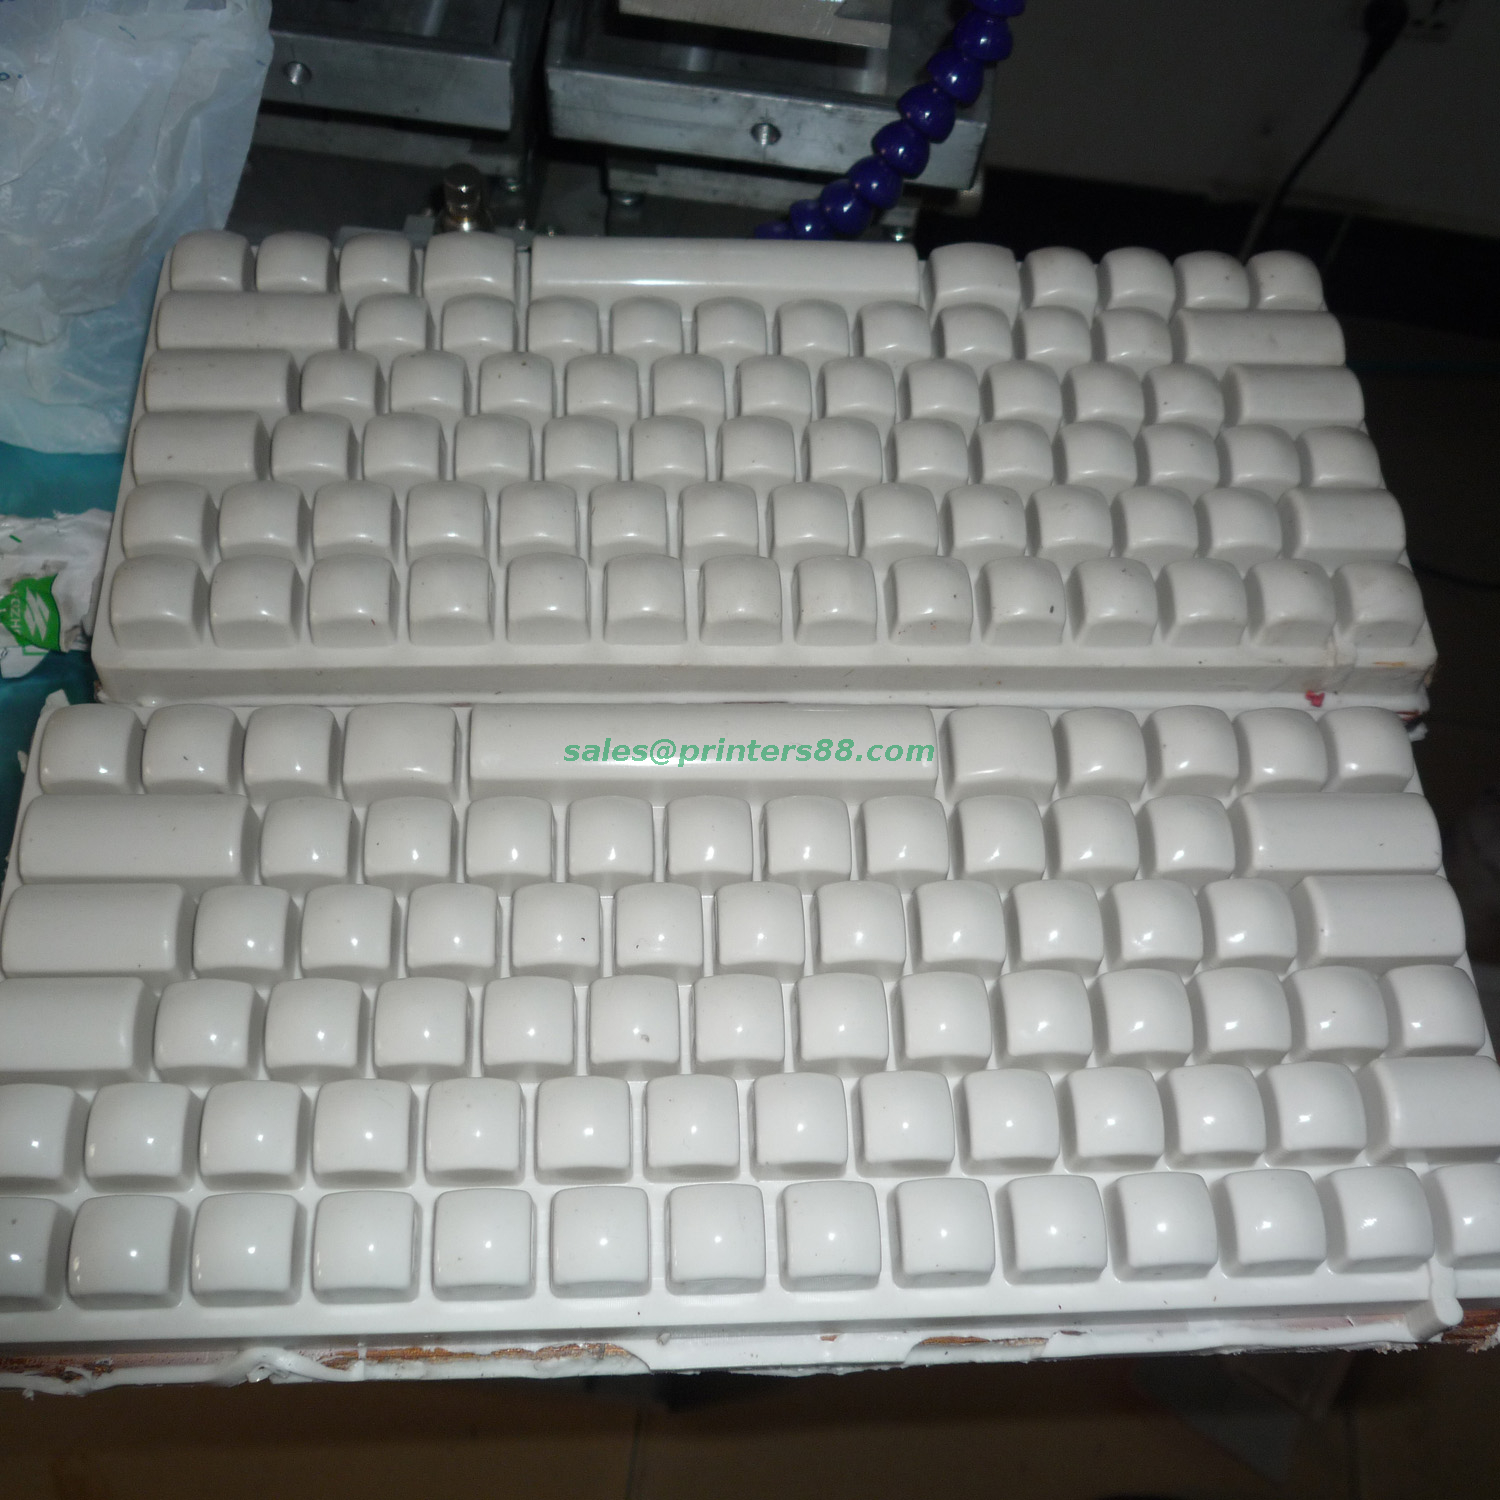 Keyboard Ink Cup Pad Printer